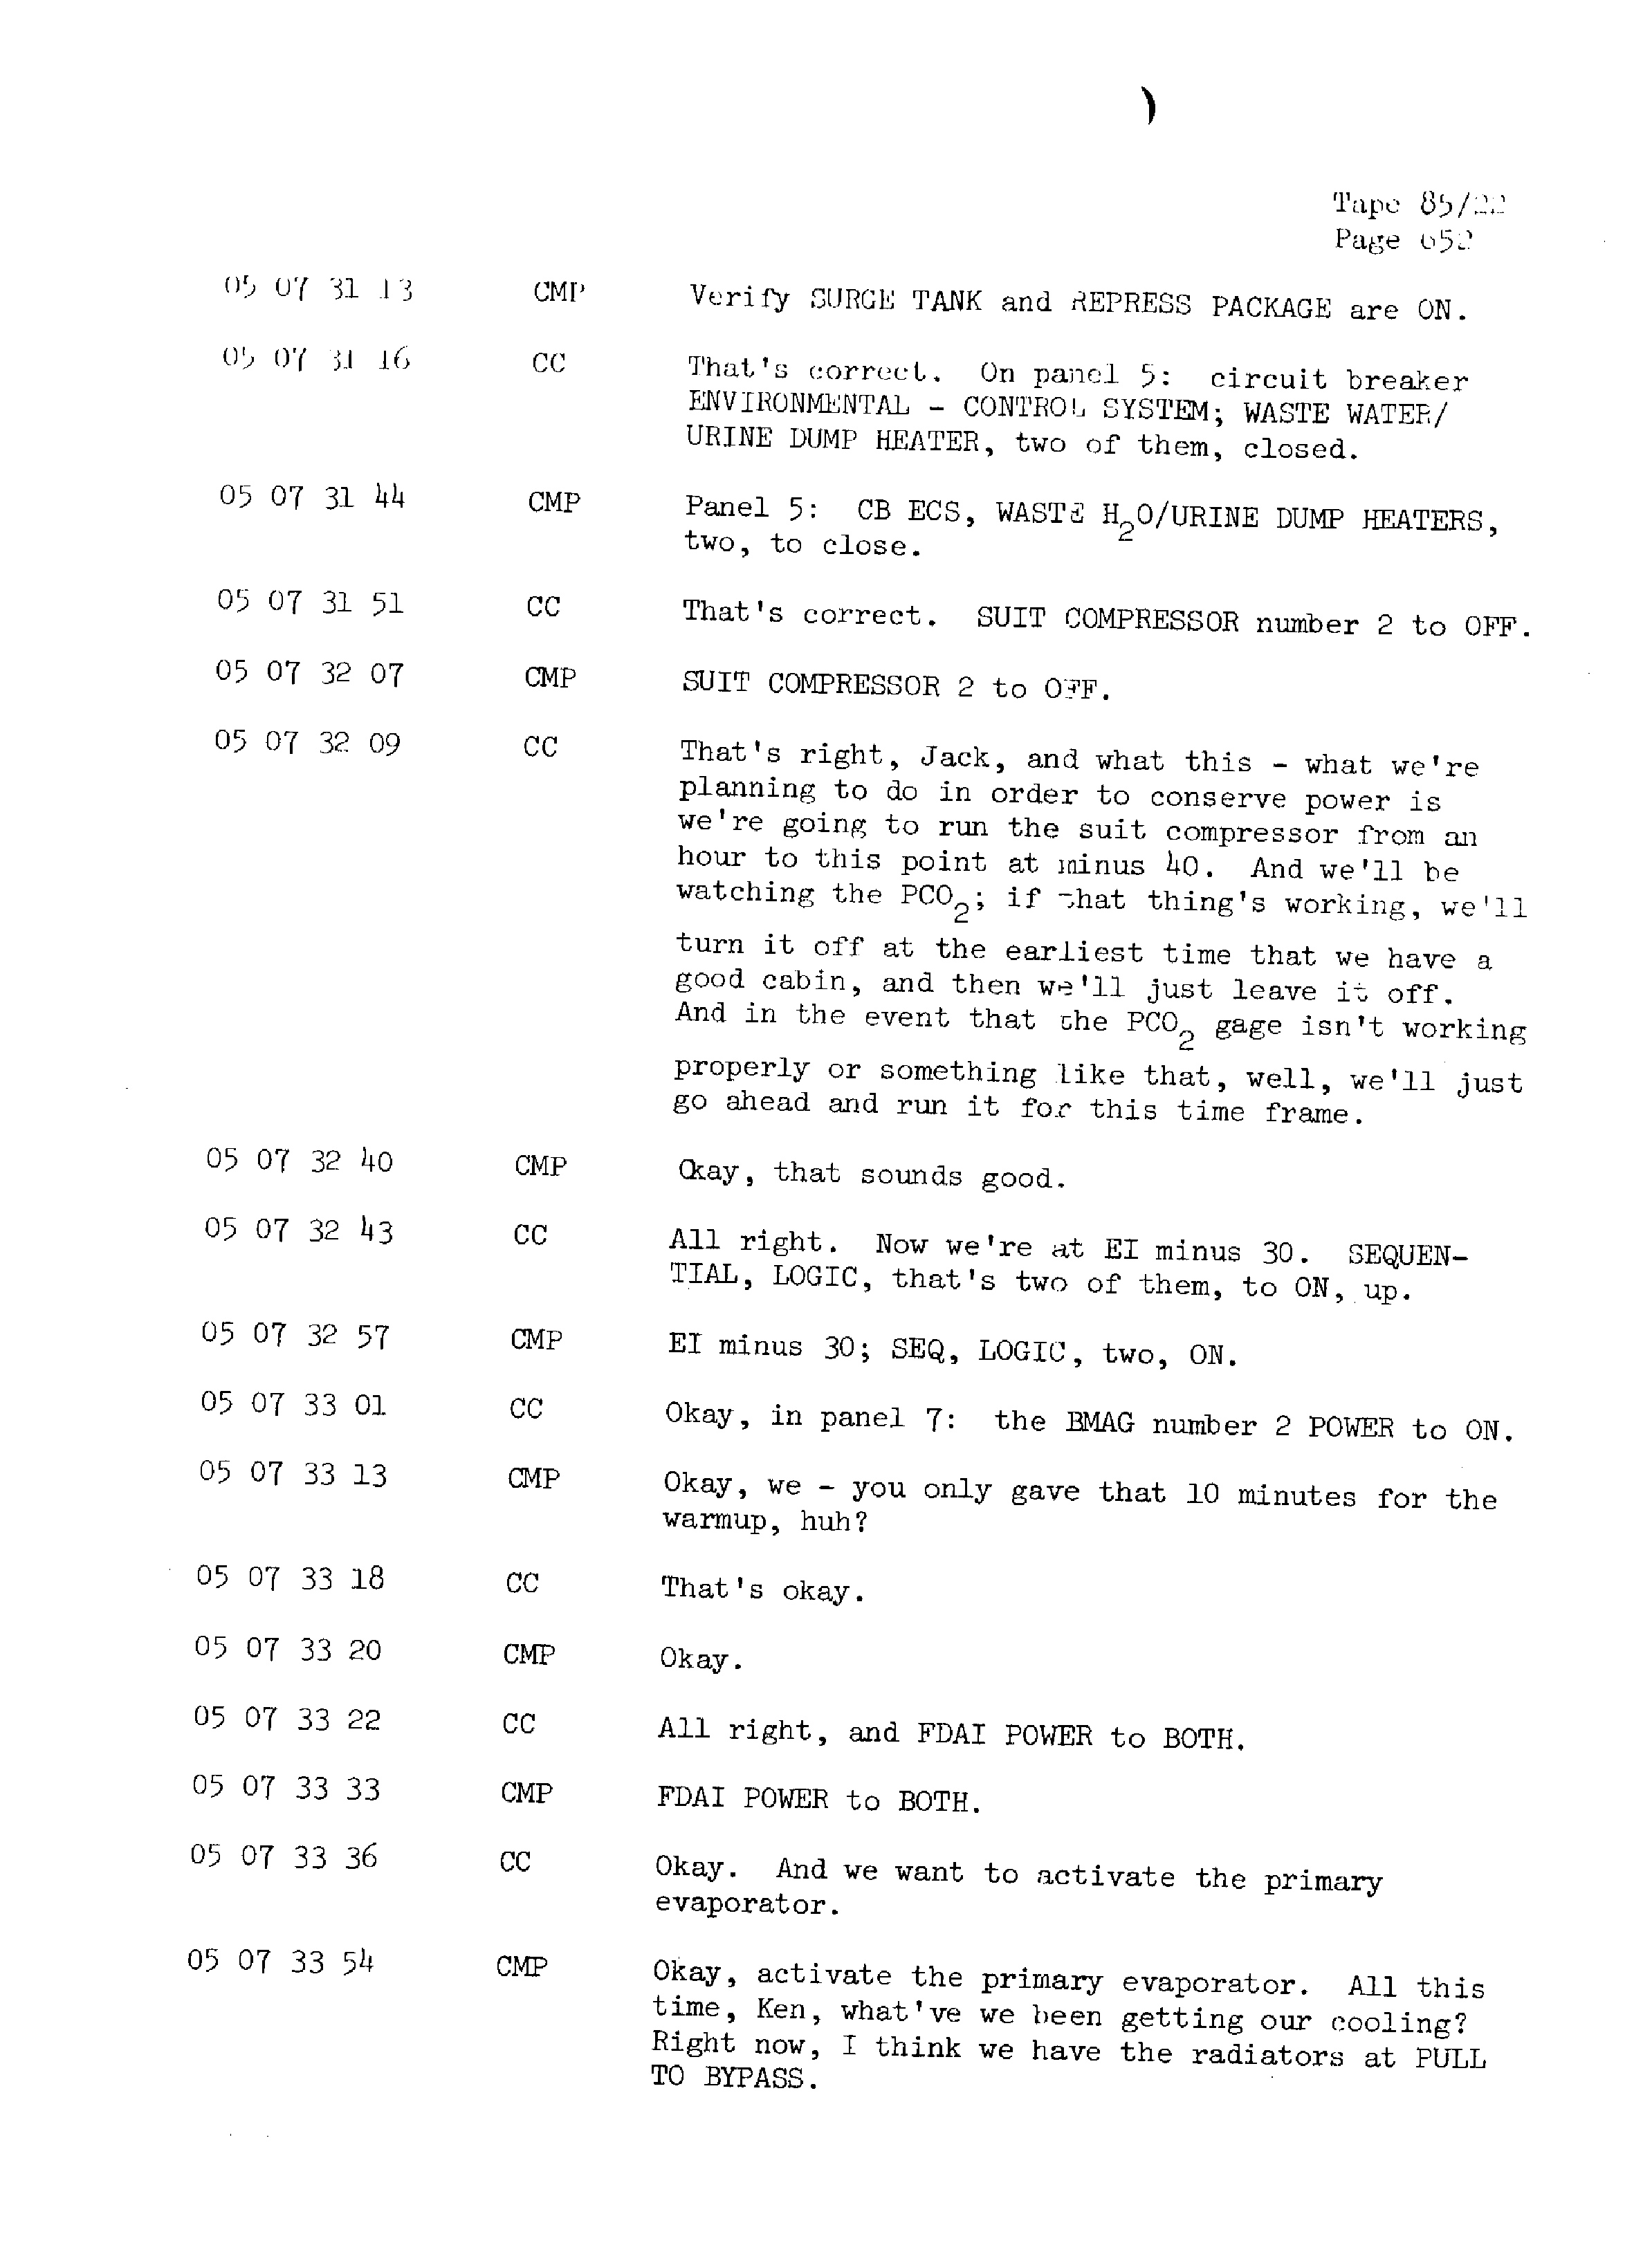 Page 659 of Apollo 13’s original transcript